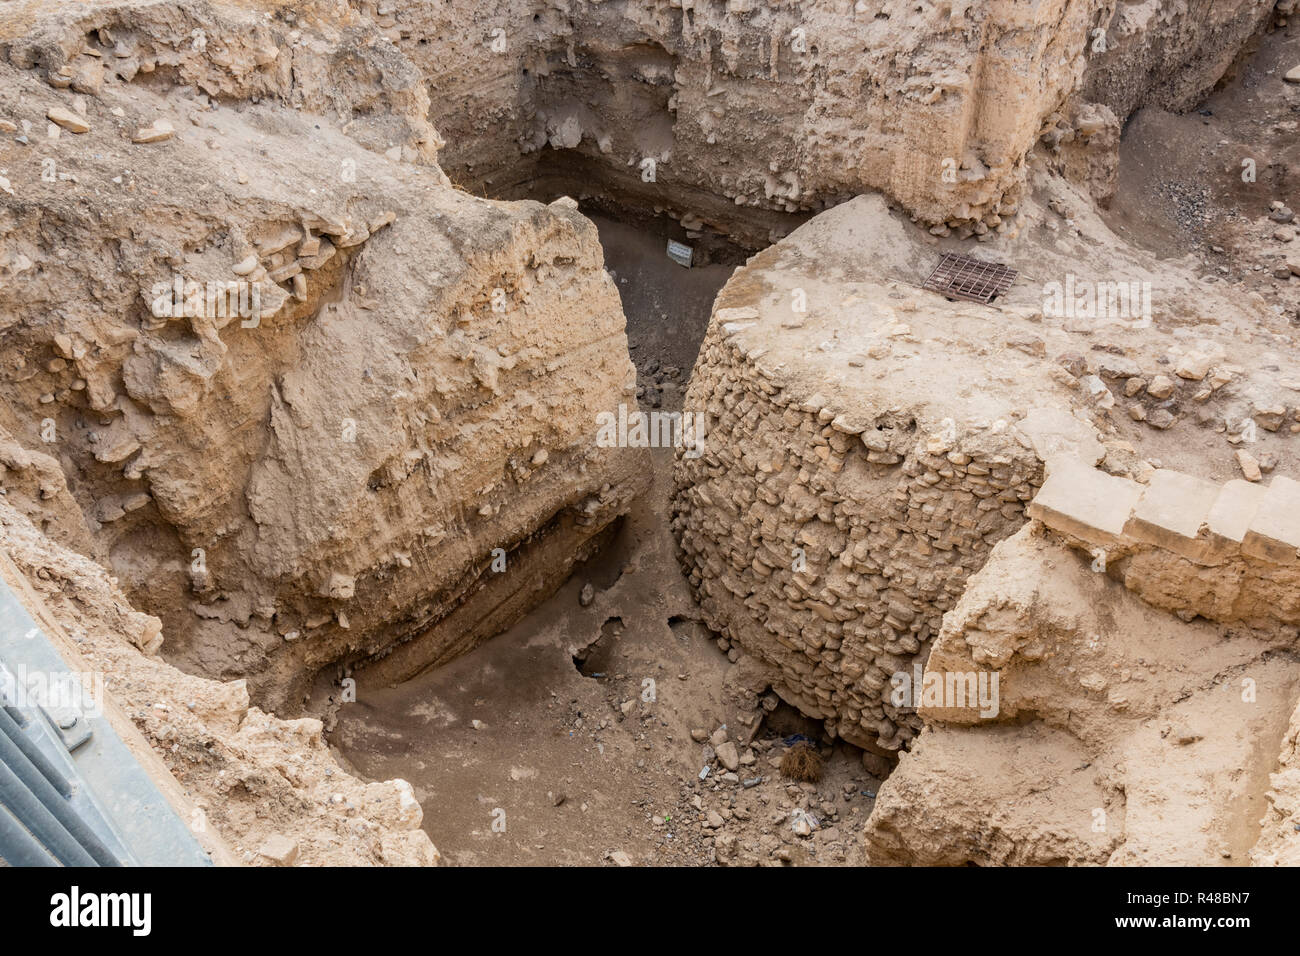 Eine der ältesten archäologischen Funde in der Welt, in der wir eine neolithische Turm von neun Metern 8000 v. Chr. archäologische Stätte Tell es-Sultan siehe betrachtet. Wes Stockfoto